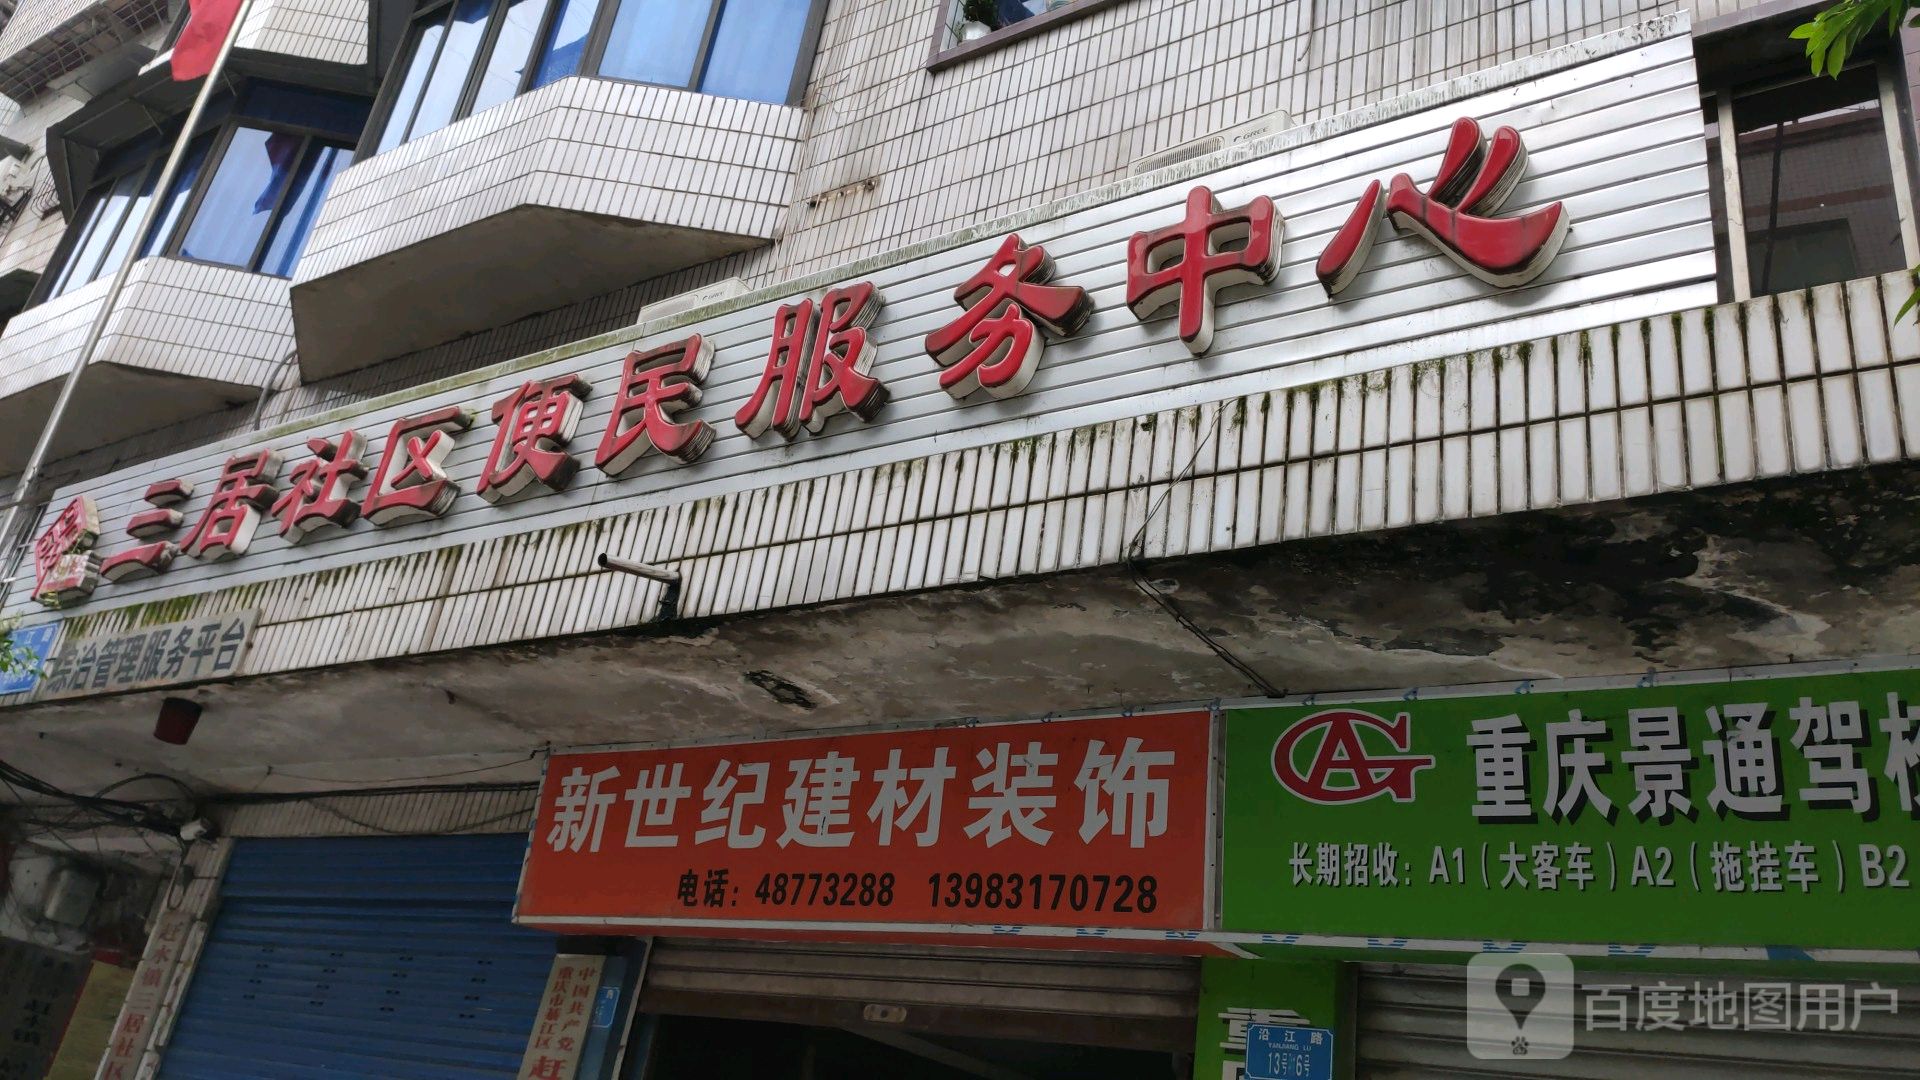 重庆市綦江区沿江路重庆农村商业银行赶水分理处西侧约130米